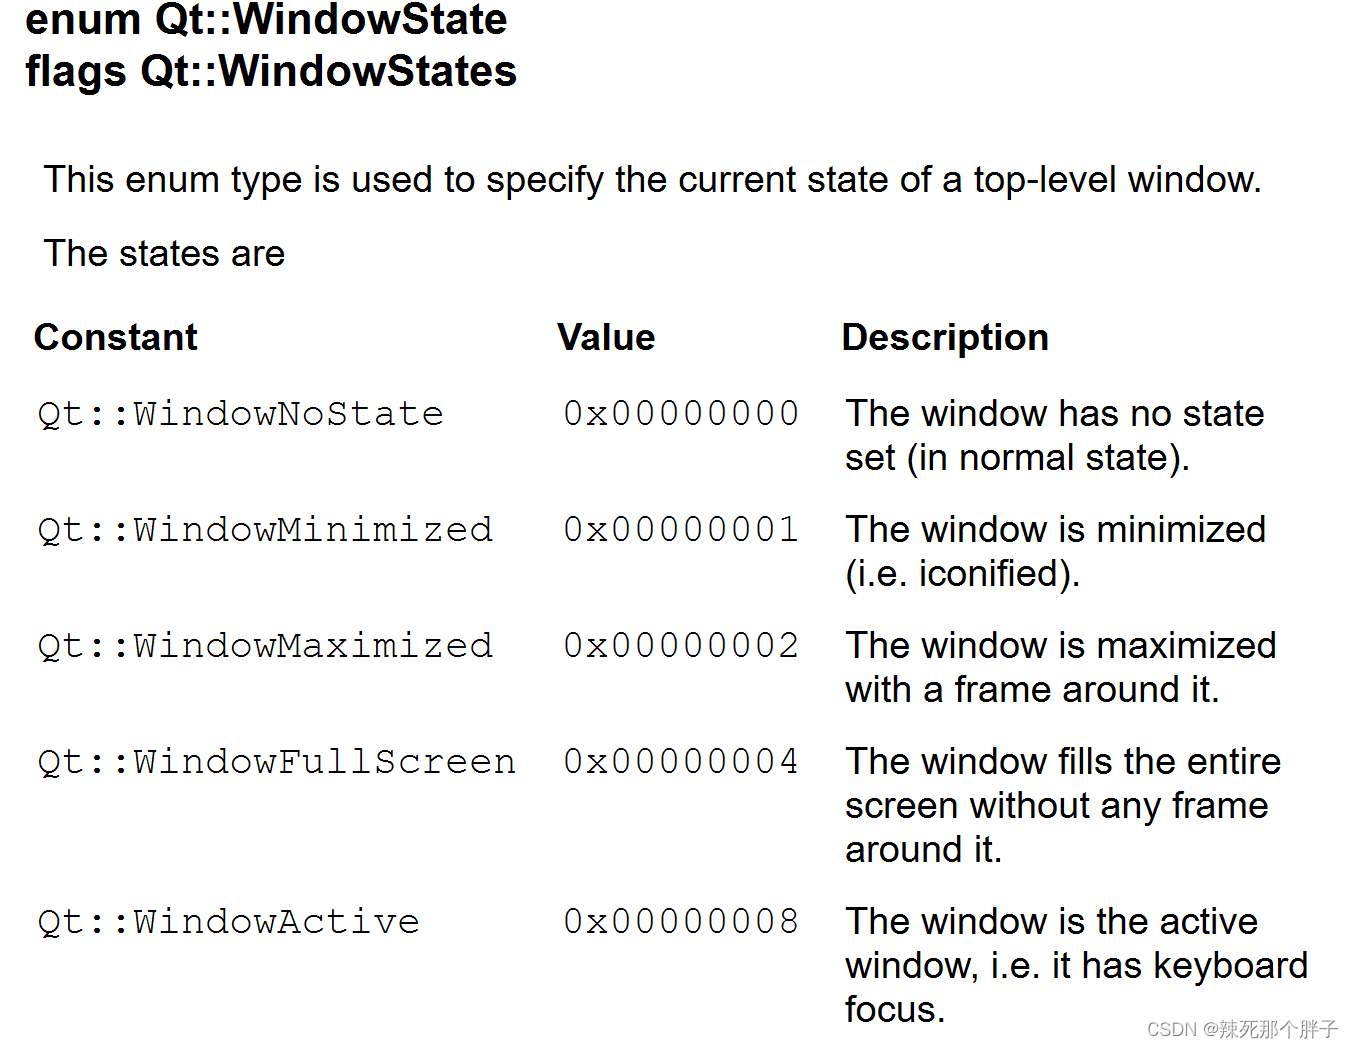 WindowState--窗口状态